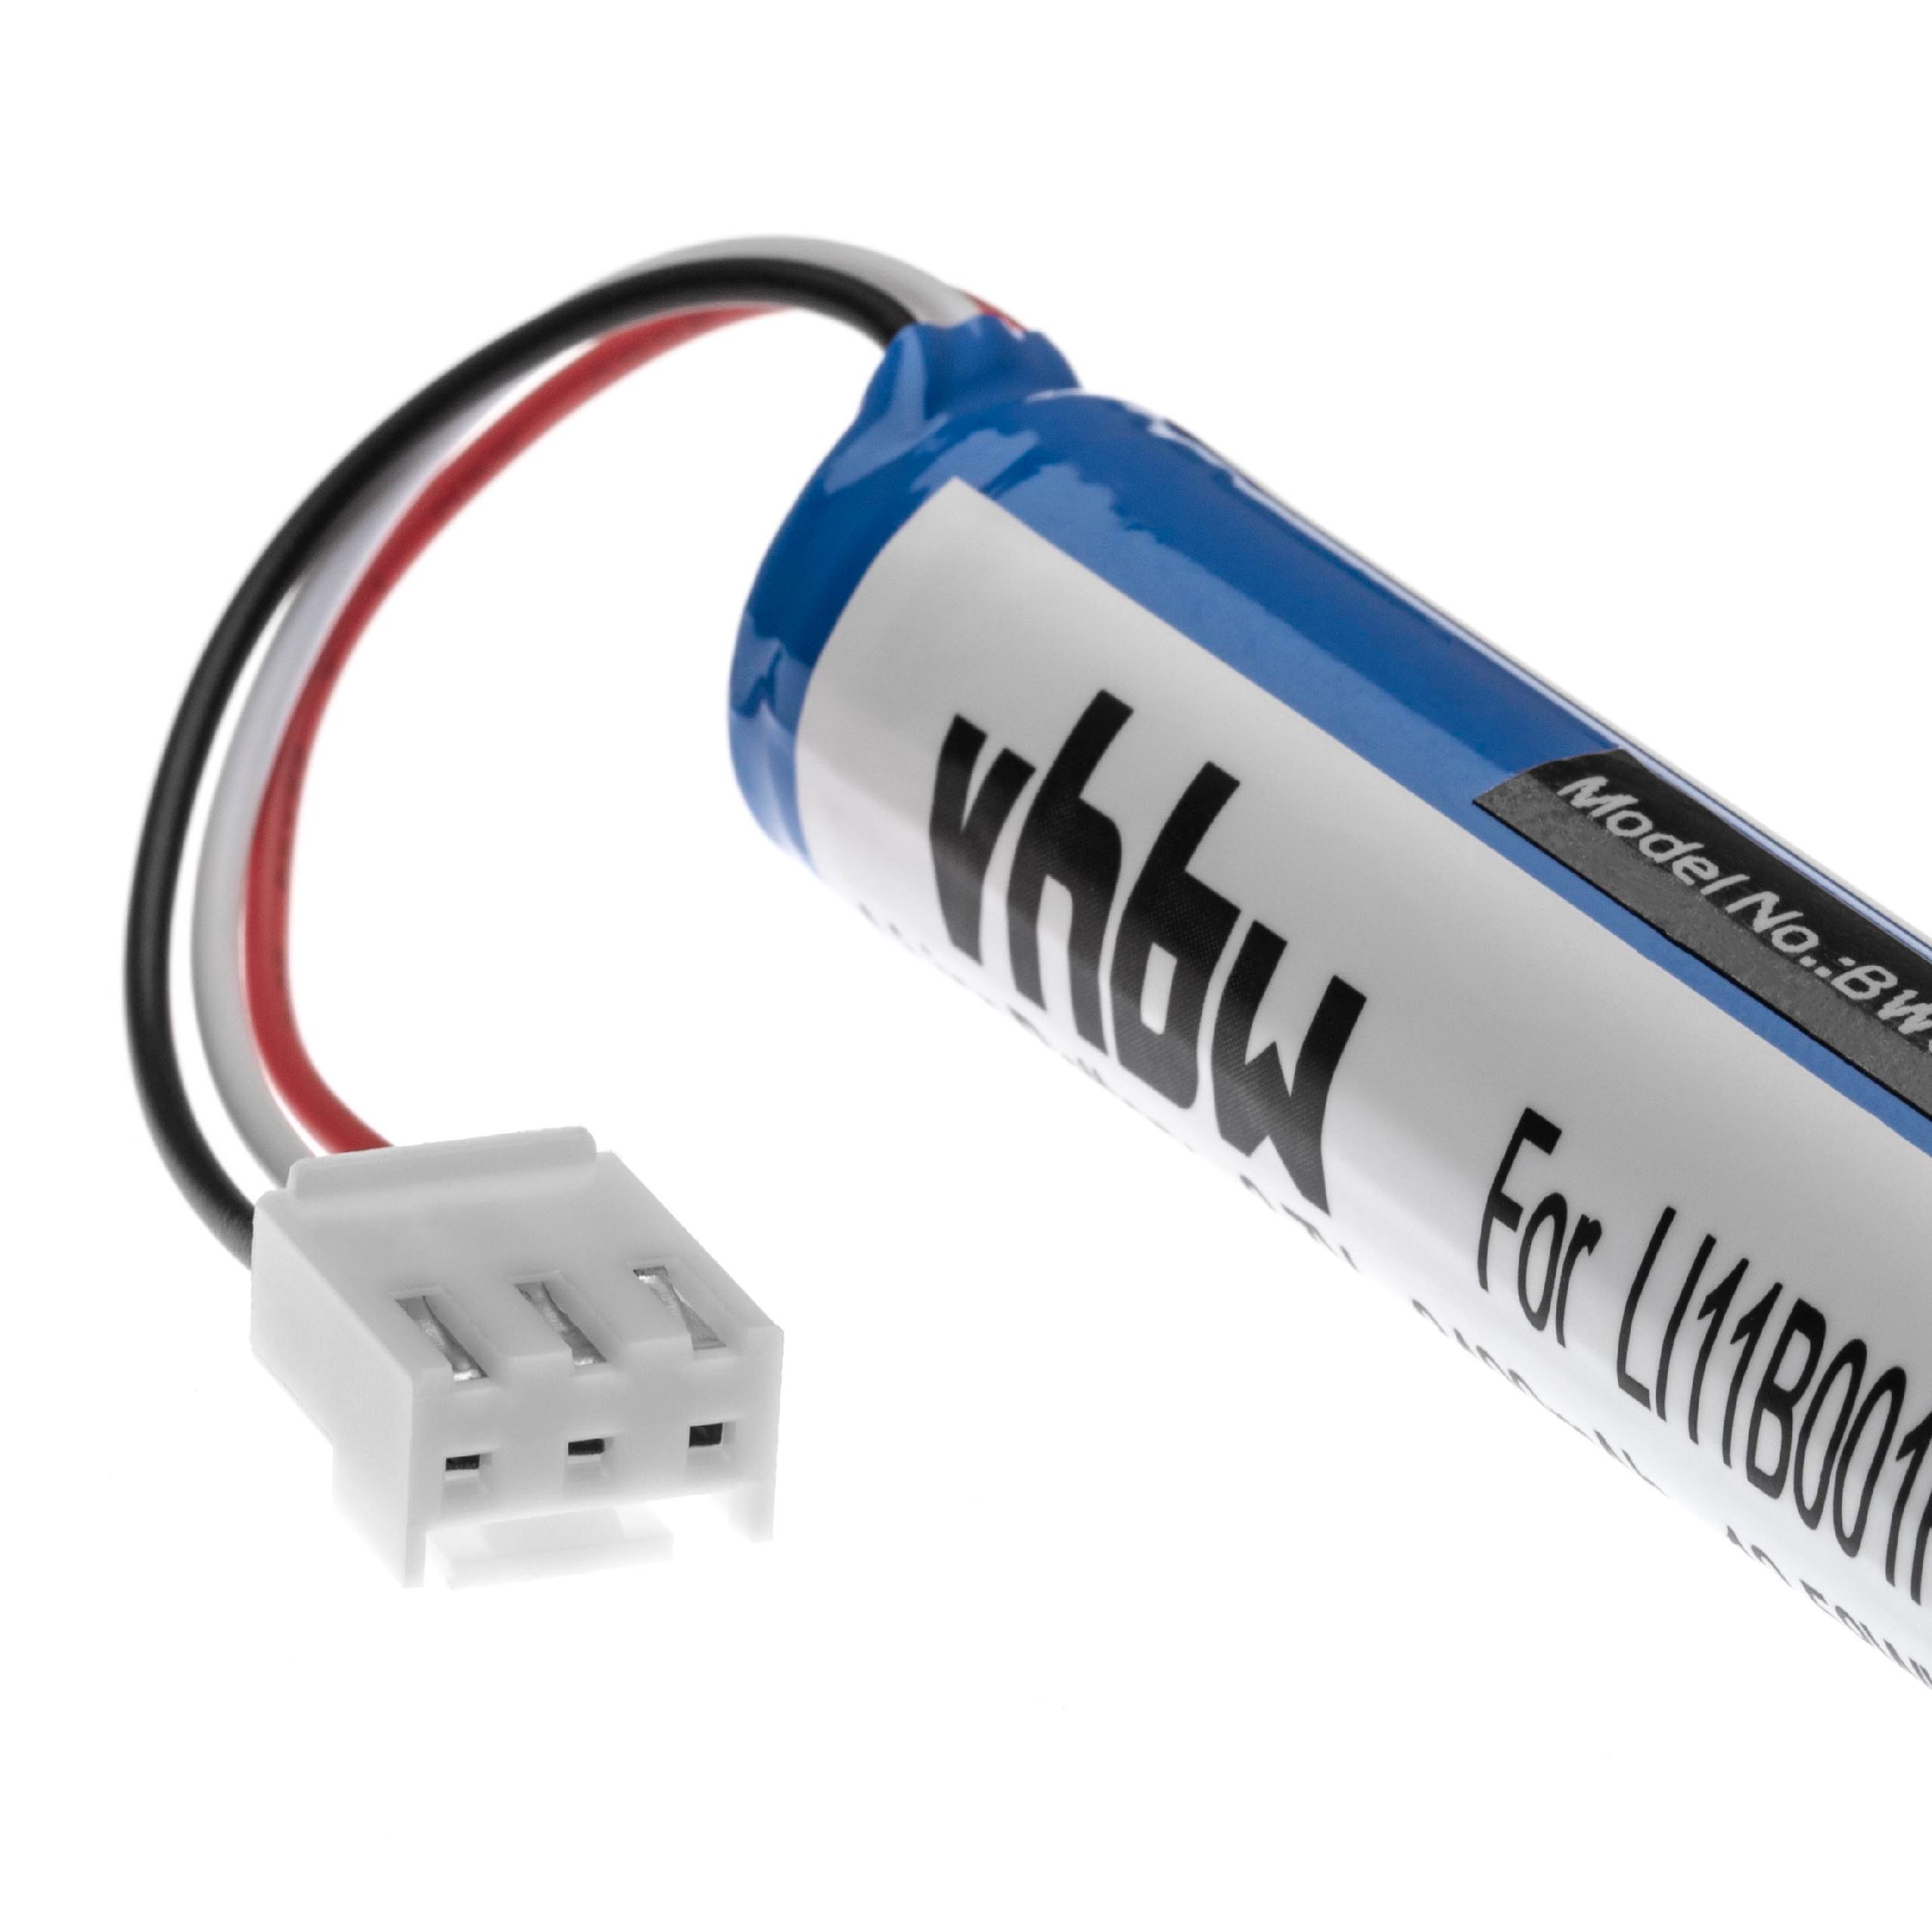 Batterie remplace Harman / Kardon LI11B001F pour enceinte Harman / Kardon - 3400mAh 3,7V Li-ion